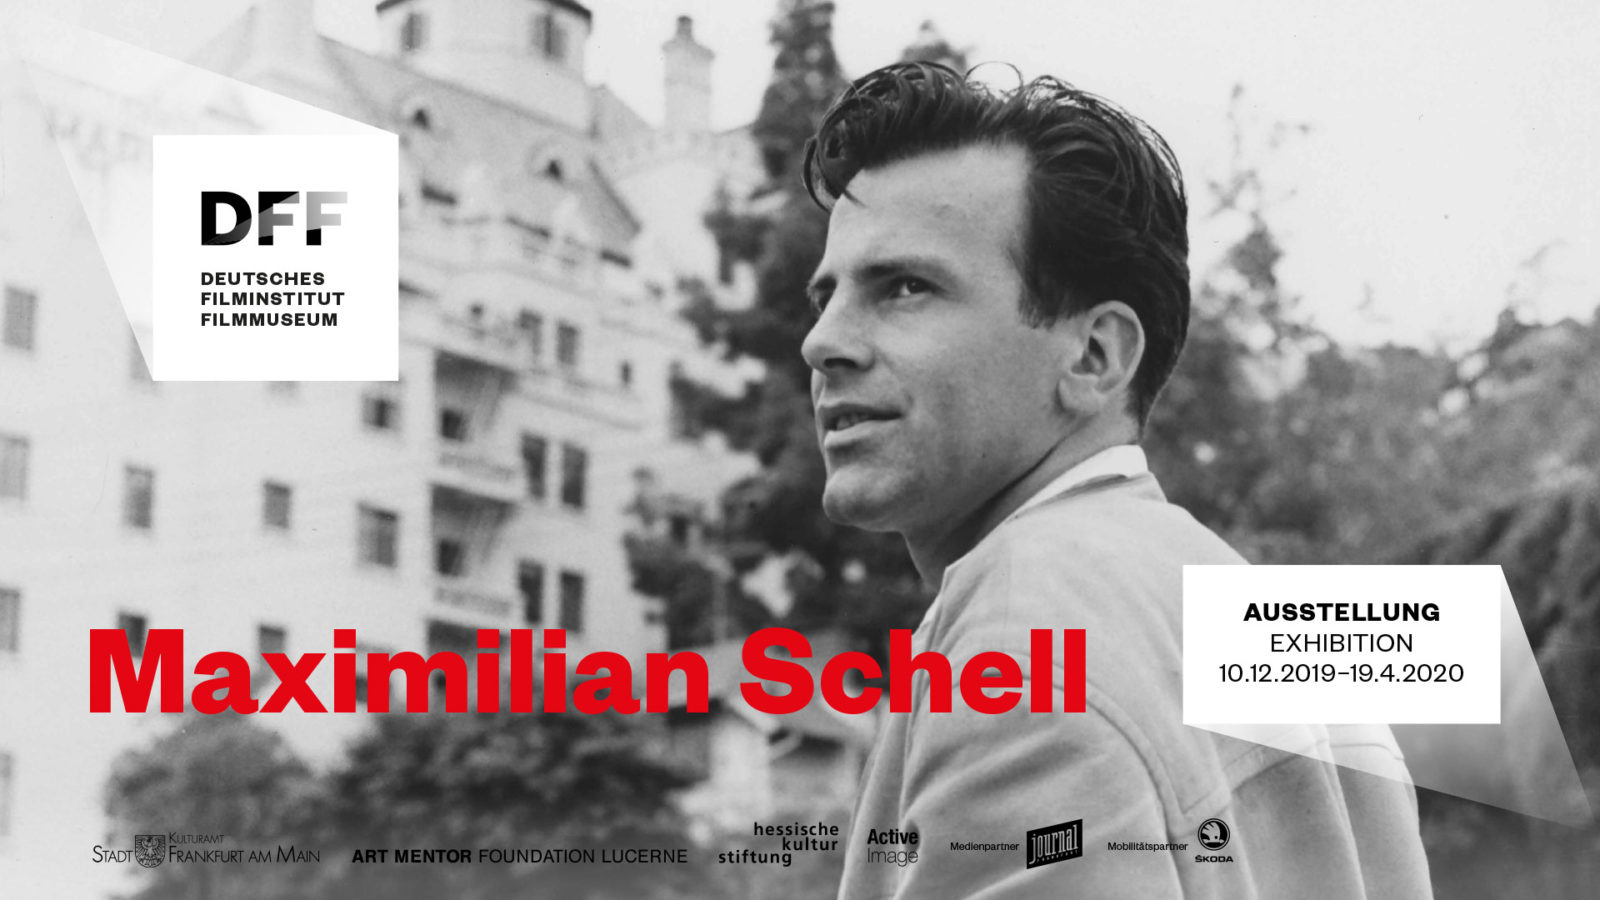 Im Hintergrund ist Maximilian Schell auf einer schwarz weiß Fotografie zu sehen, im Vordergrund sind sowohl das Logo der Ausstellung, als auch das des DFF zu sehen.